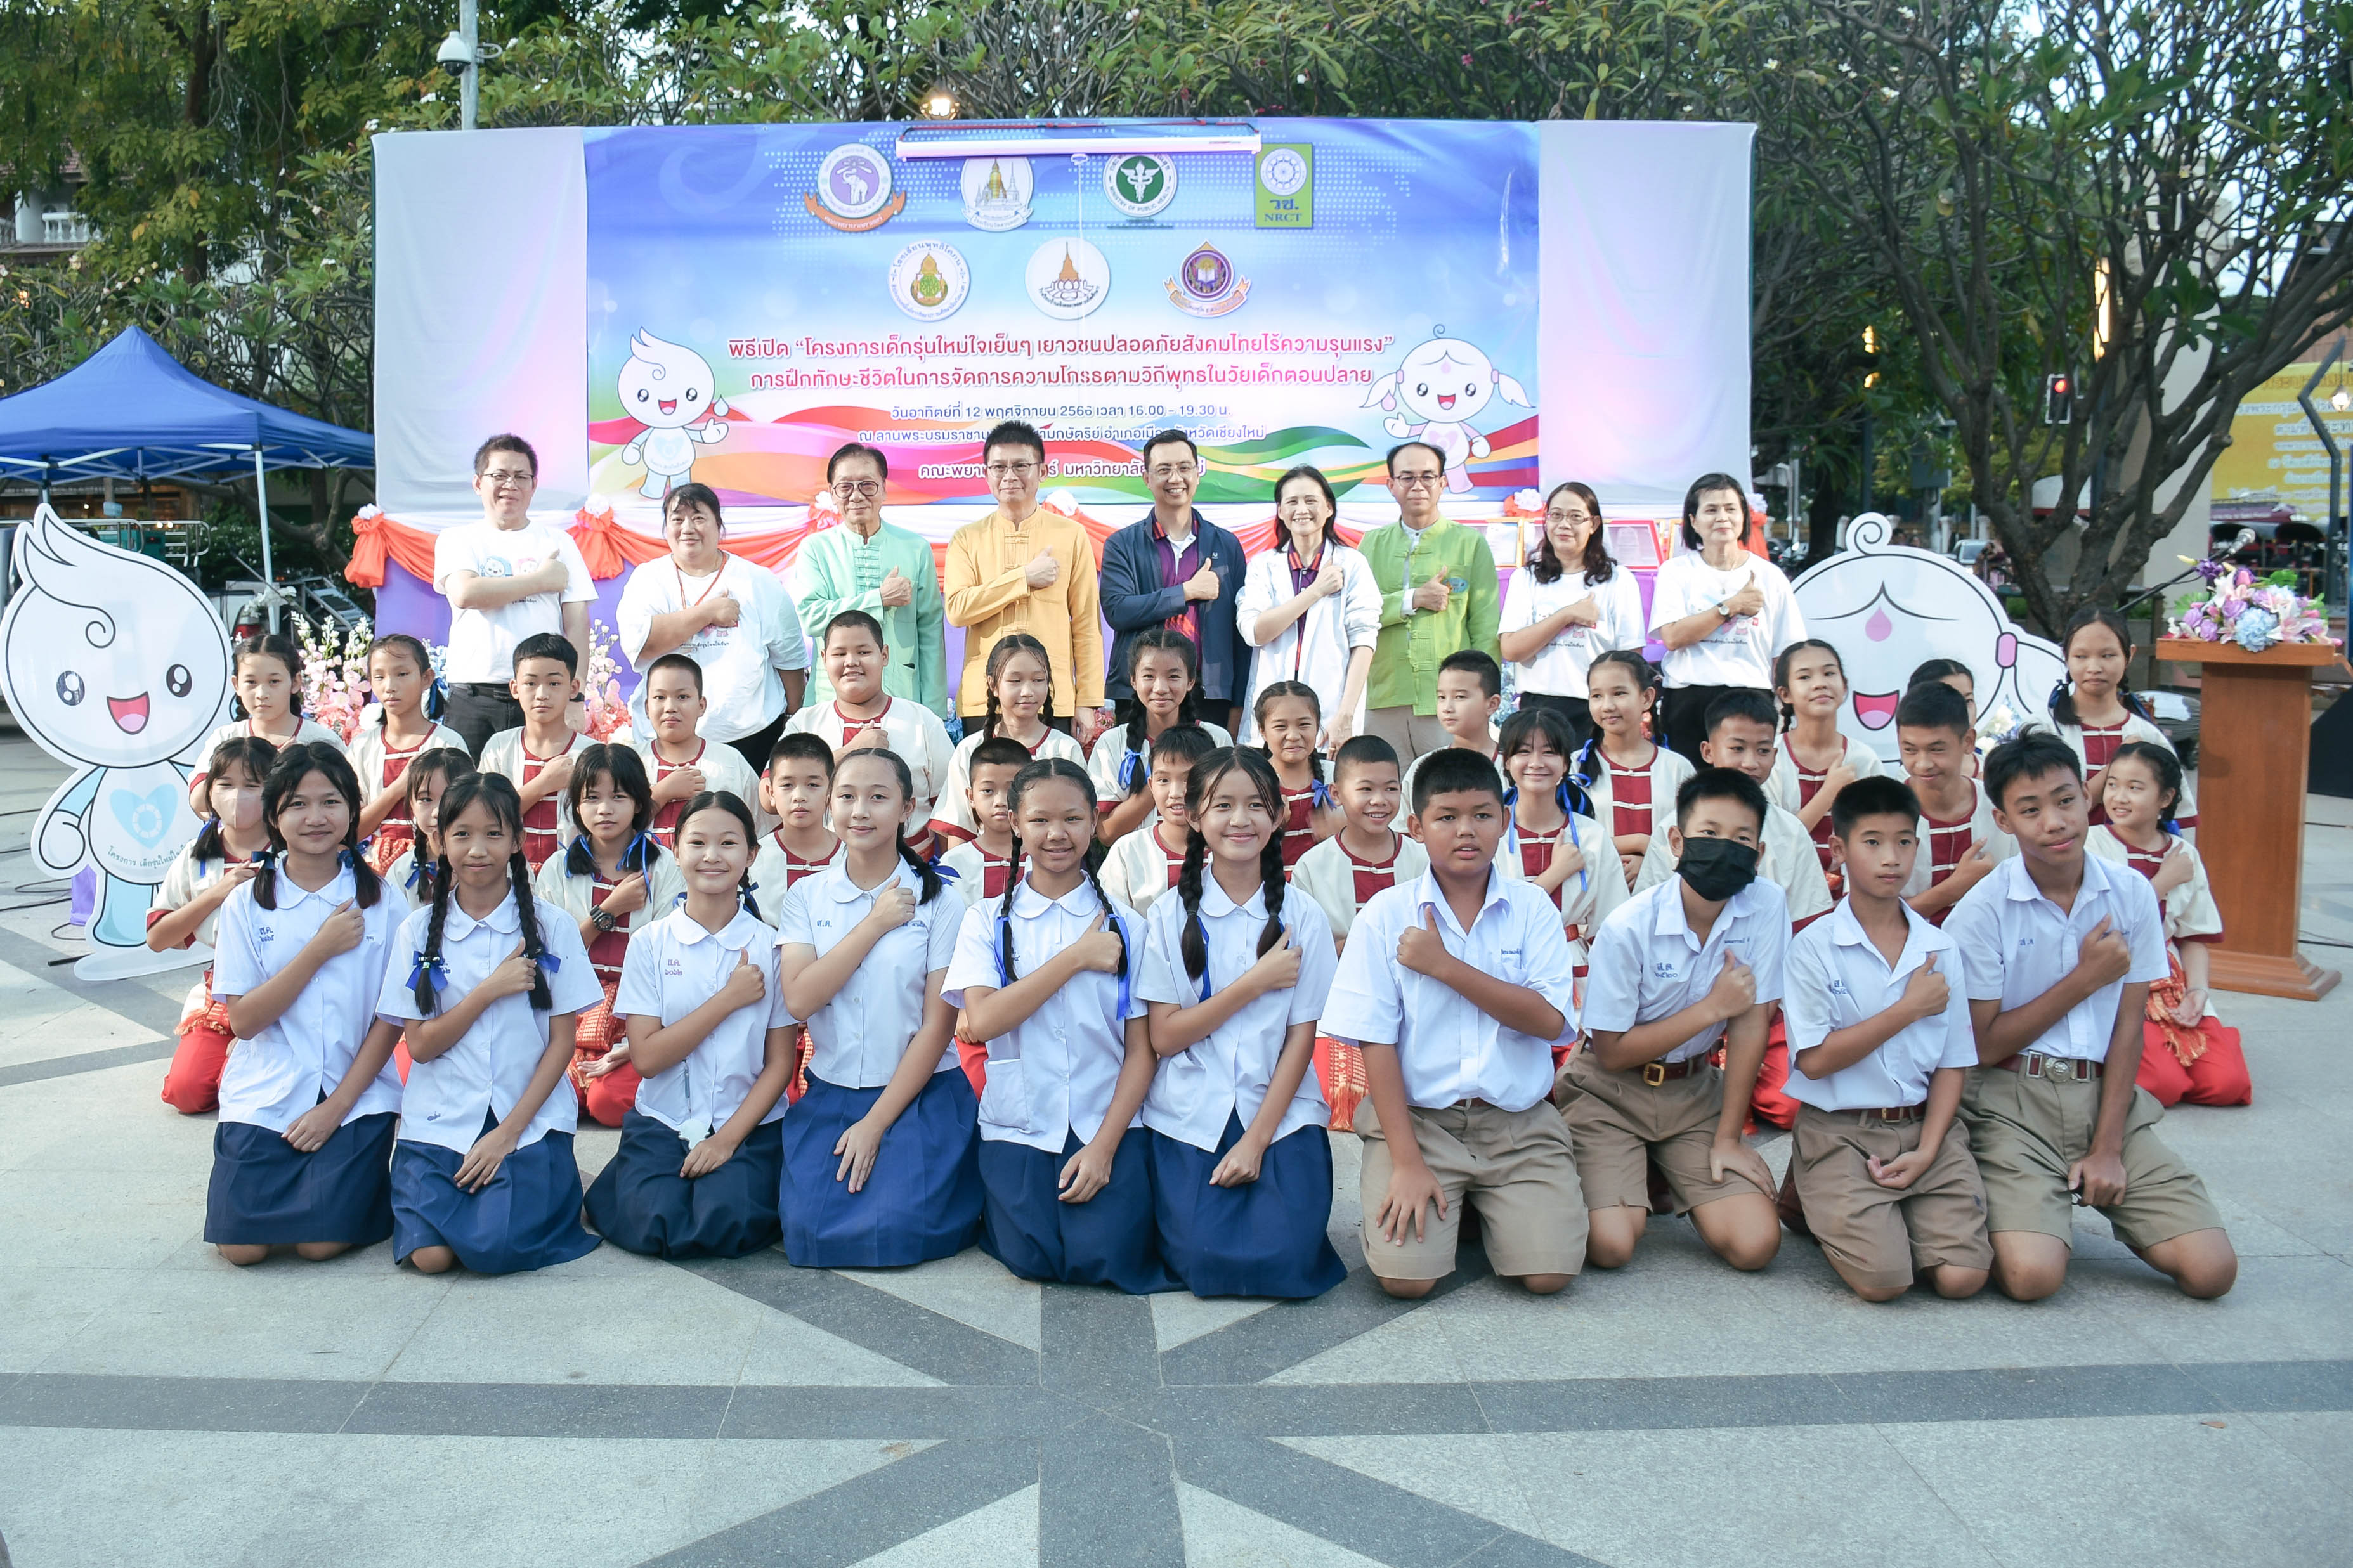 
	พิธีเปิดโครงการเด็กรุ่นใหม่ใจเย็น ๆ เยาวชนปลอดภัยสังคมไทยไร้ความรุนแรง
